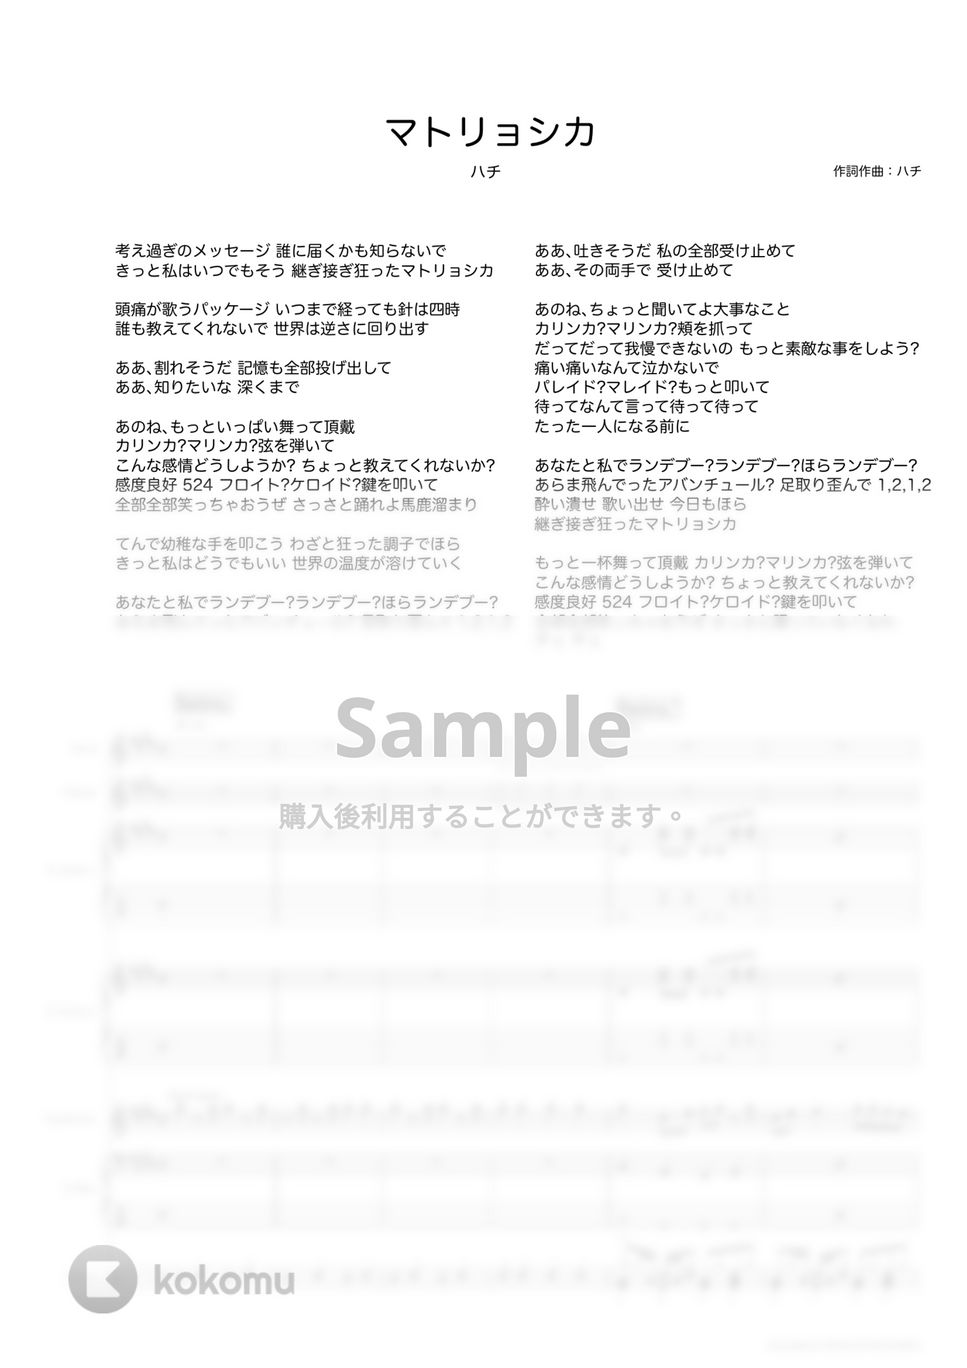 ハチ - マトリョシカ (バンドスコア) by TRIAD GUITAR SCHOOL